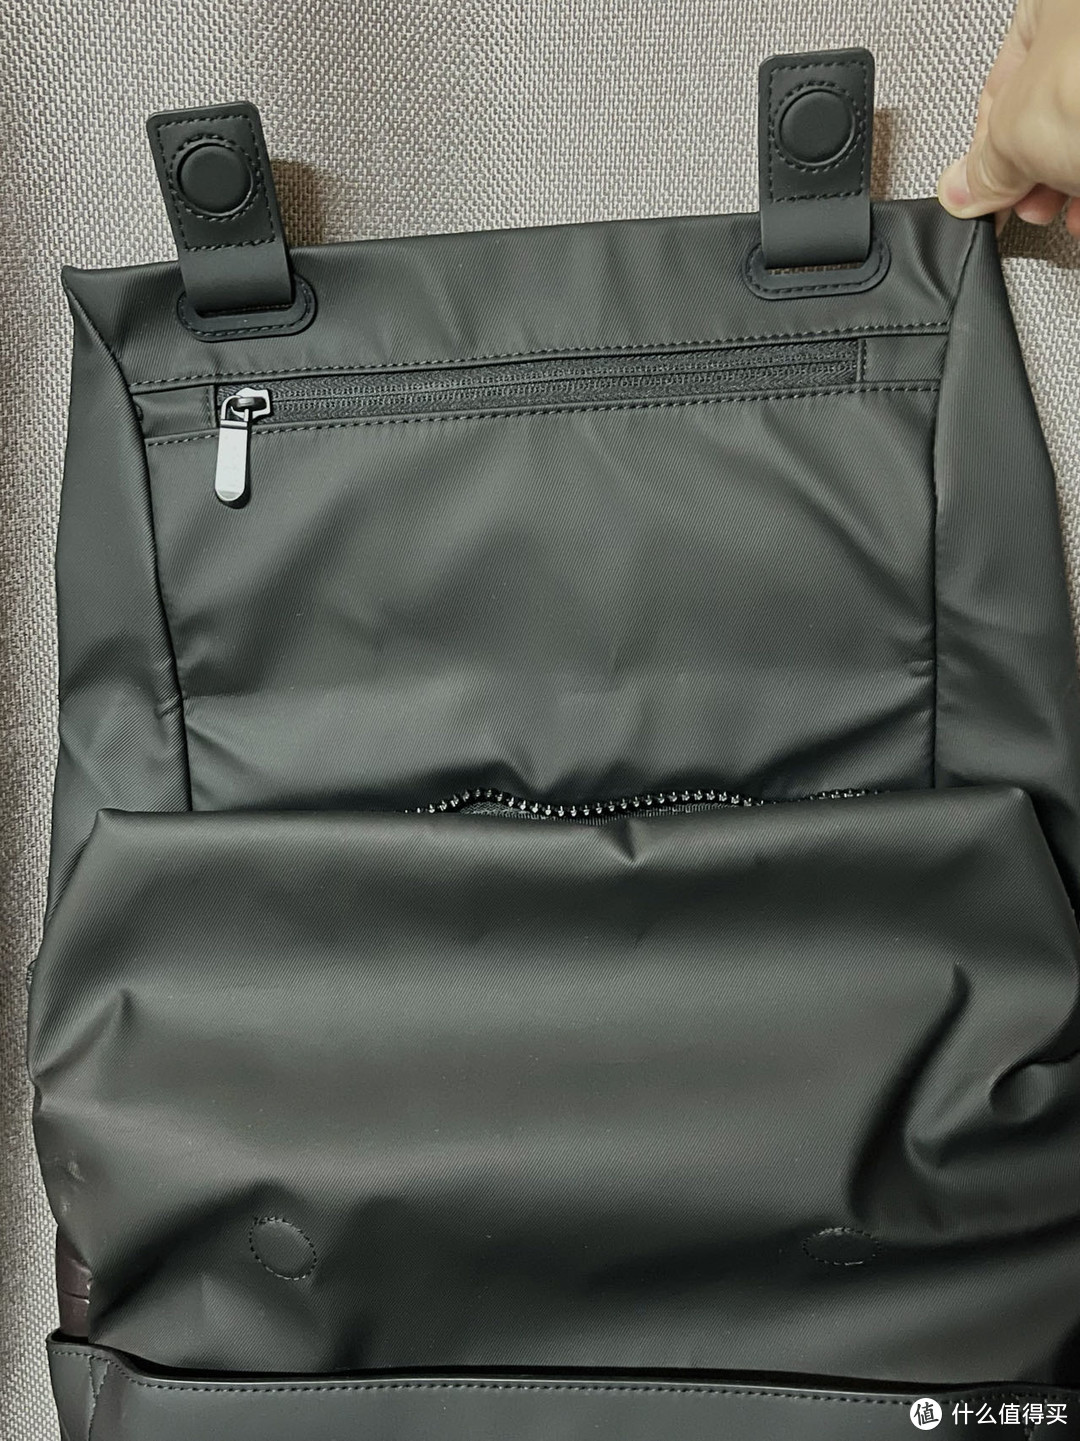 不止是一只背包，更是一种时尚：地平线8号无界双肩背包让你轻松打造潮流LOOK～